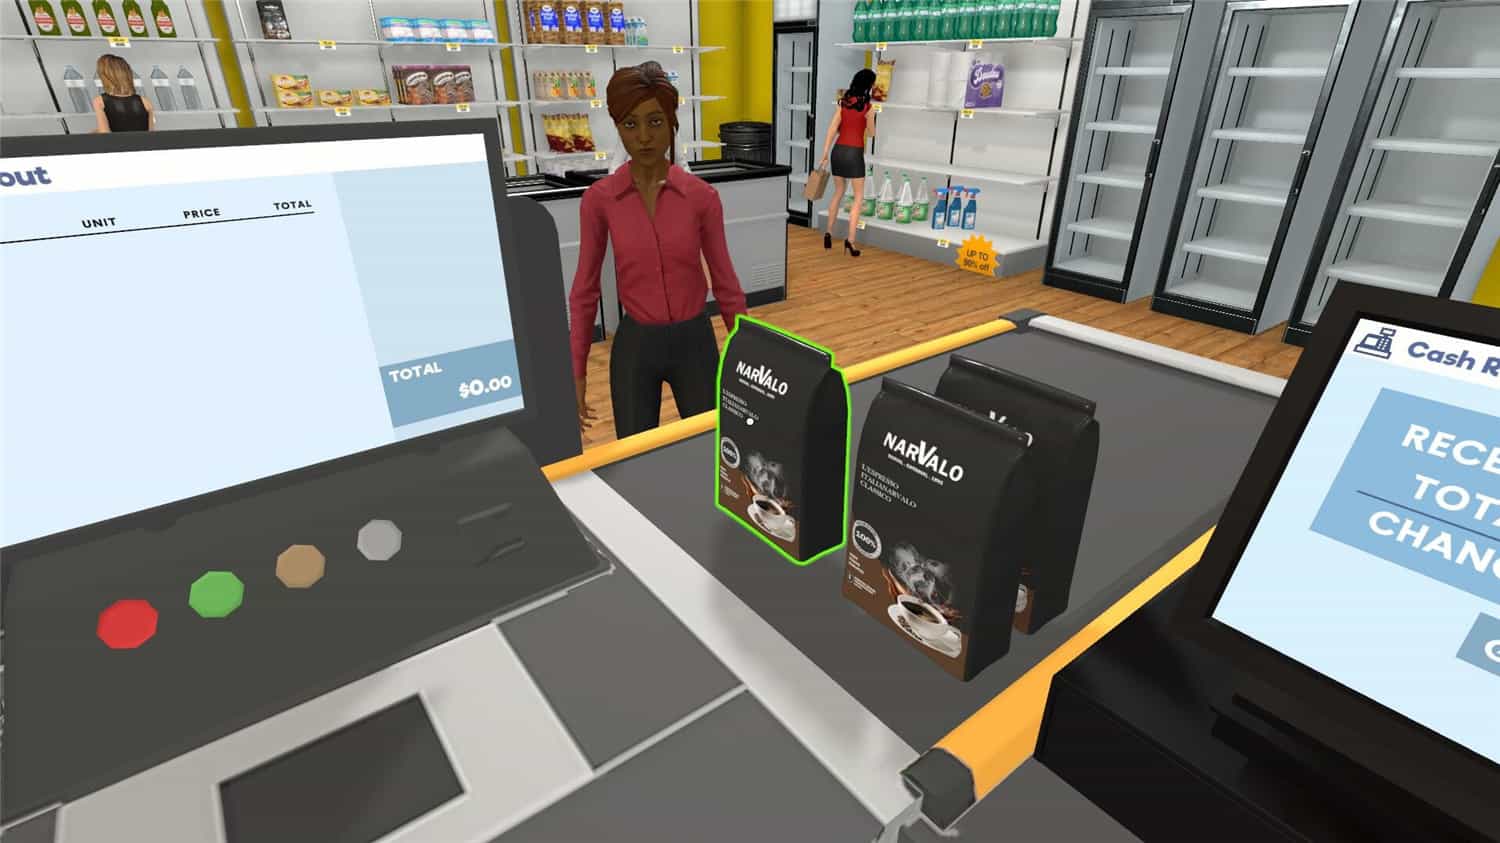 超市模拟器/Supermarket Simulator v0.1.0.5 官方简体中文 4.28GB插图7